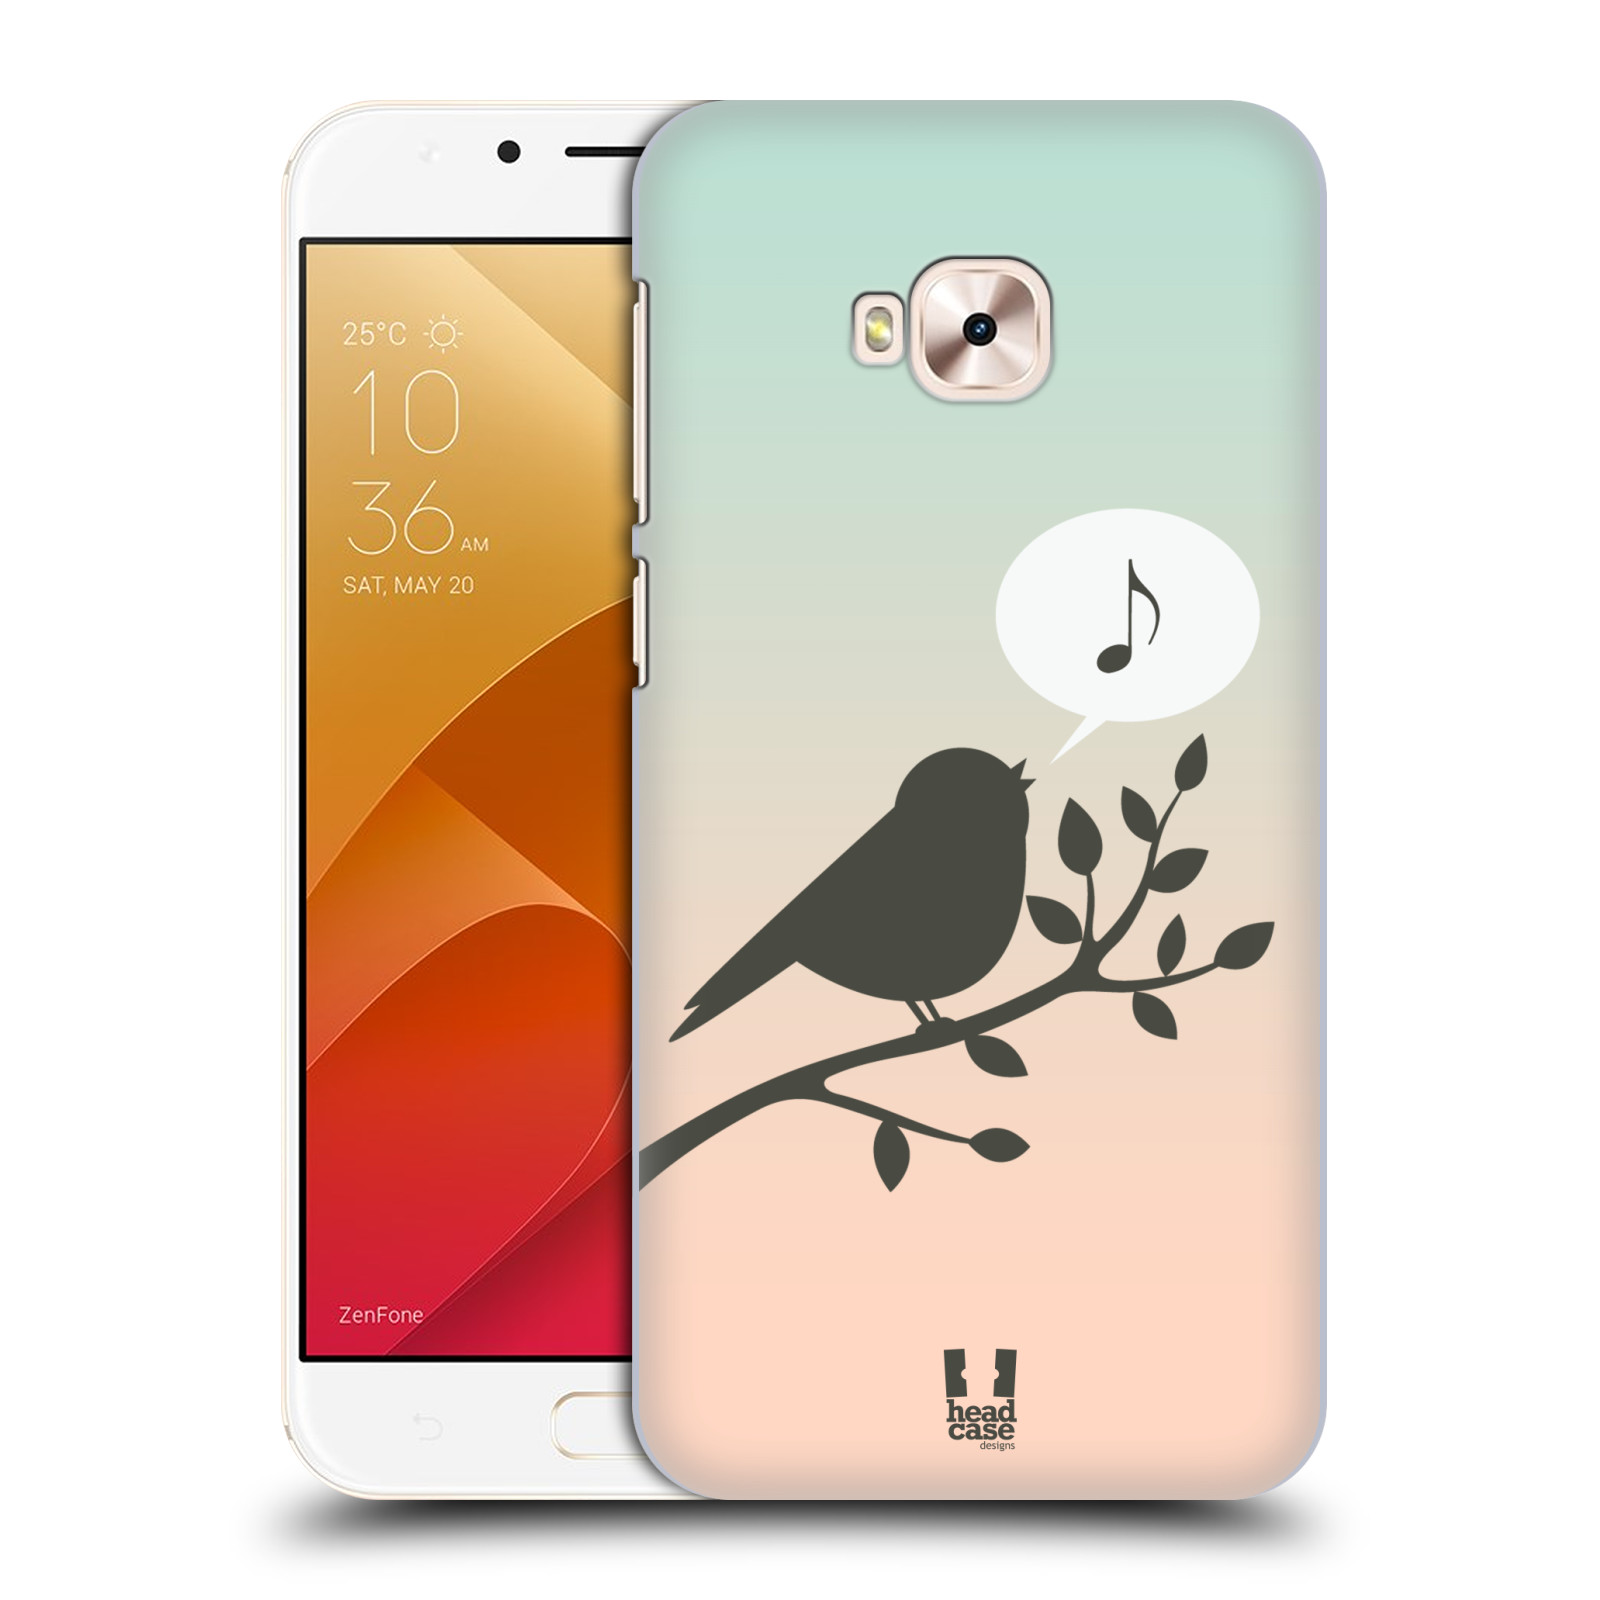 HEAD CASE plastový obal na mobil Asus Zenfone 4 Selfie Pro ZD552KL vzor Ptáček zpěváček noty píseň